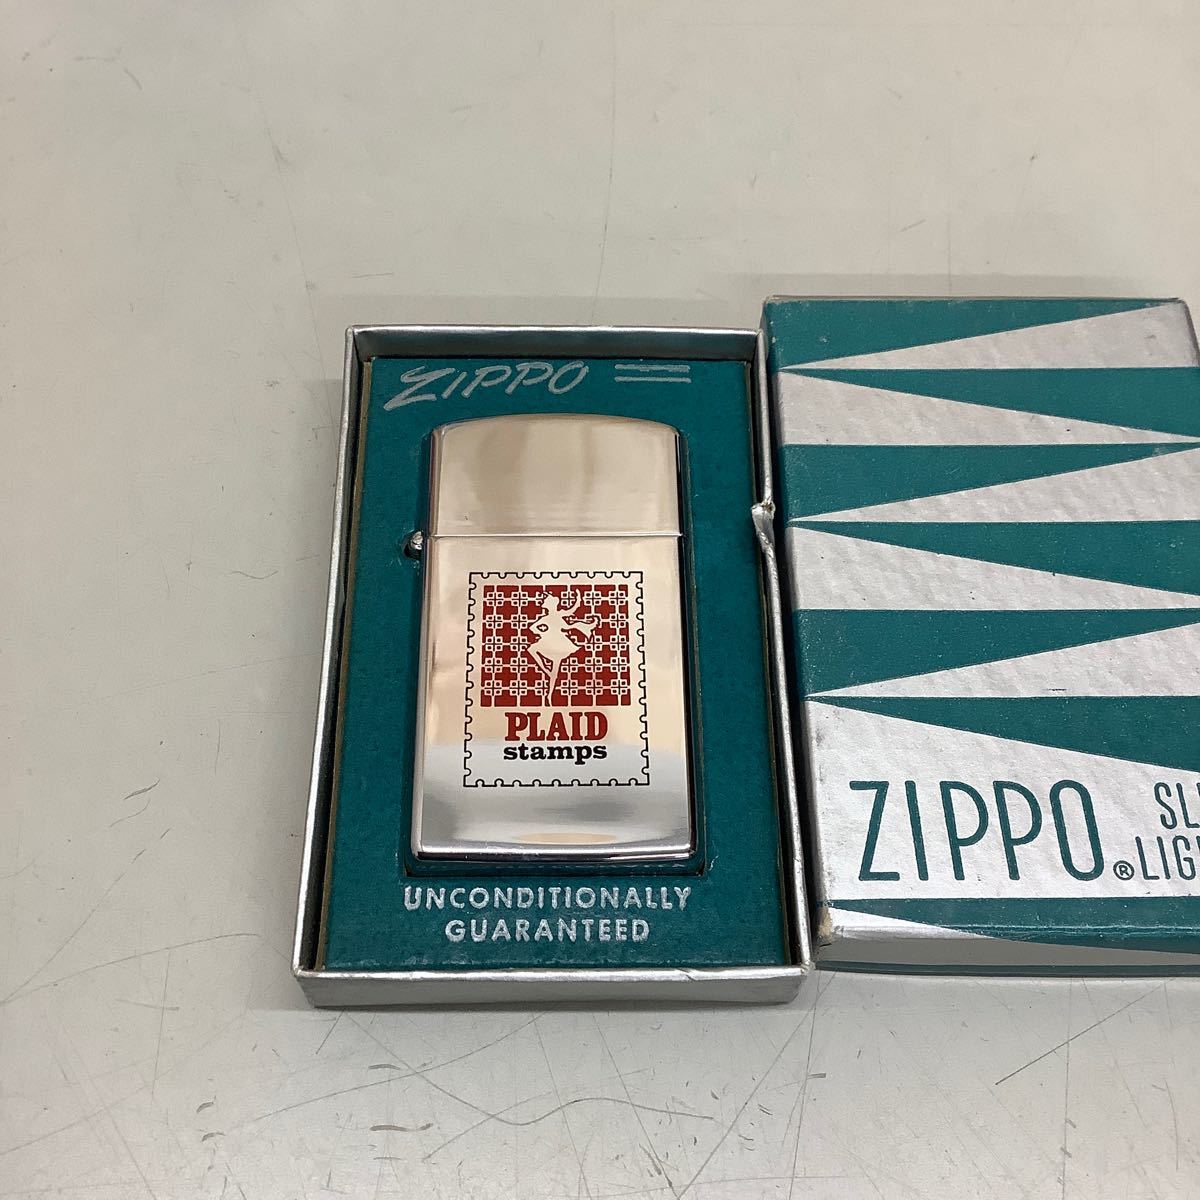 ⑥ ZIPPO ジッポ スリム 1962 PLAID stamps 旧ロゴ ヴィンテージ 現状品 着火未確認 _画像1